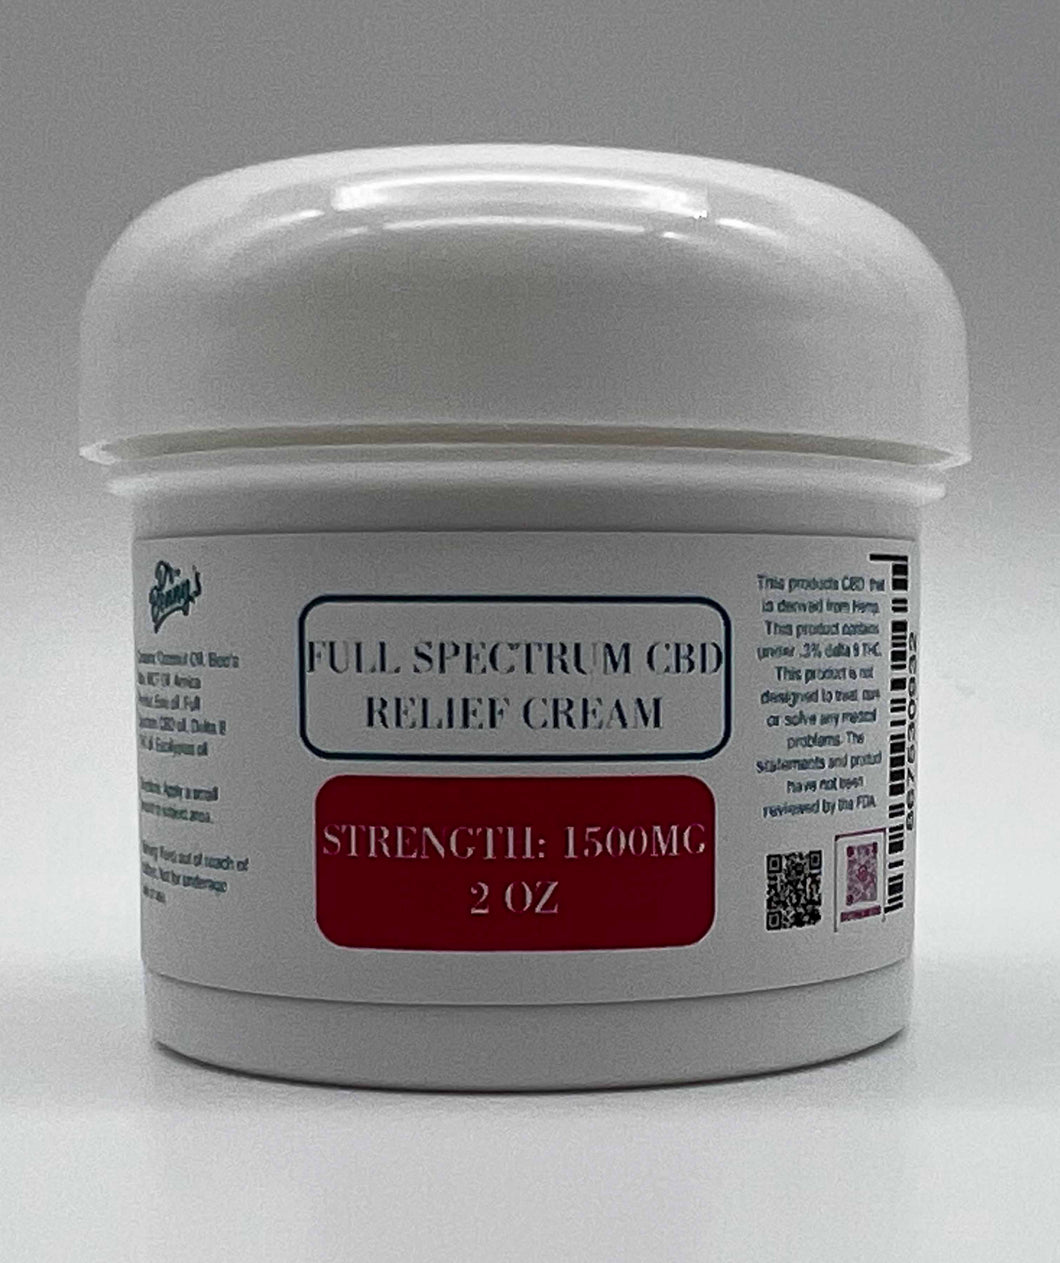 Full Spectrum CBD Relief Cream 1500mg